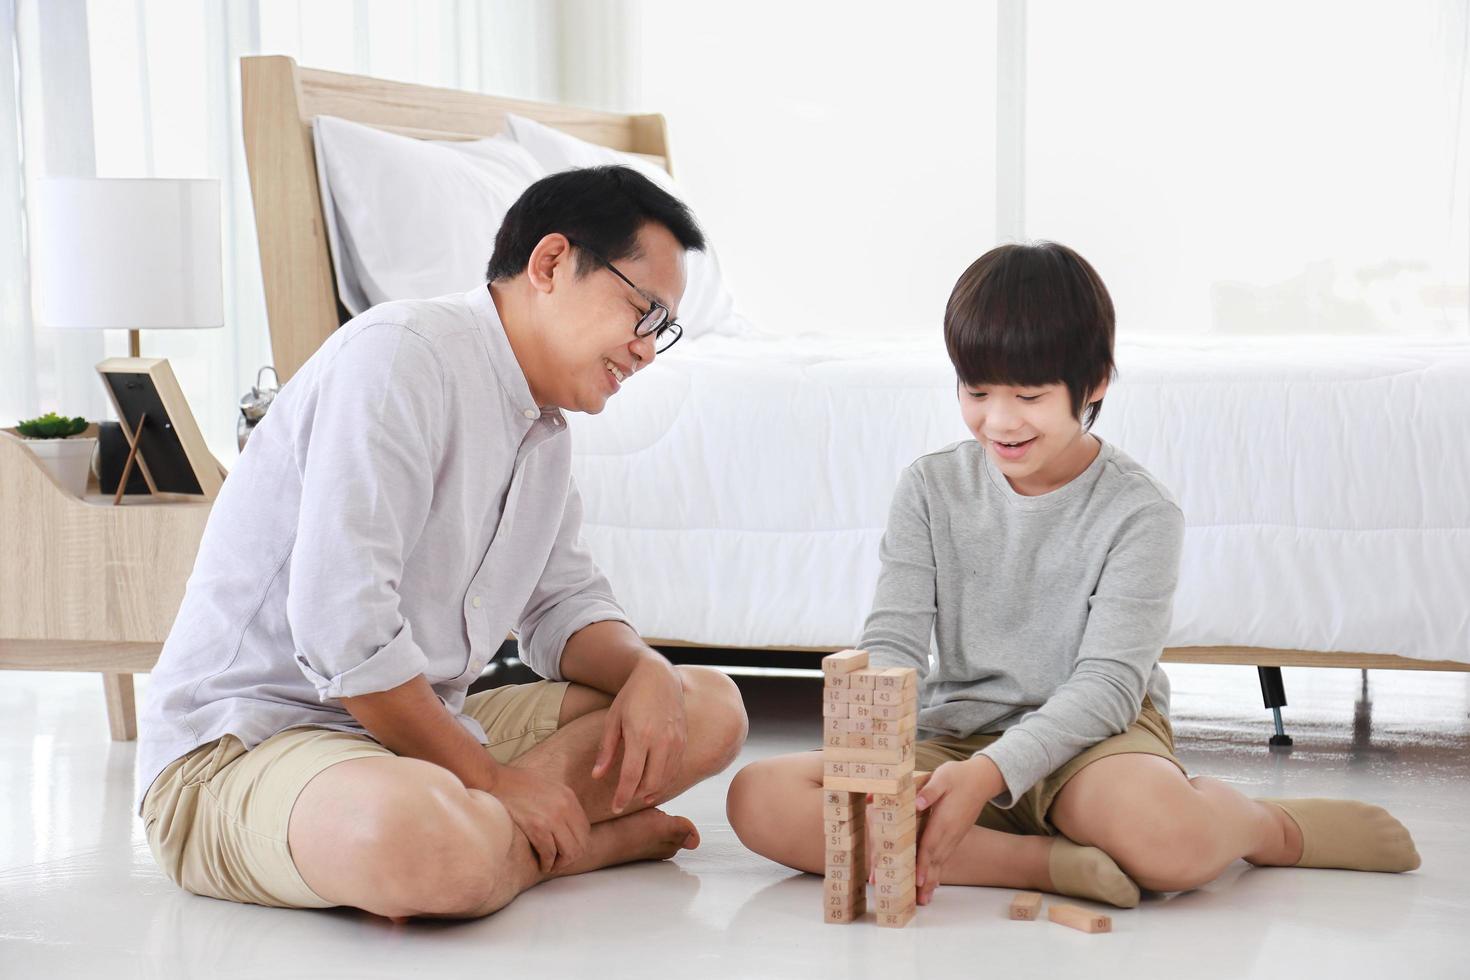 père et fils asiatiques se concentrent sur le jeu de blocs de bois ensemble à la maison pour le concept de divertissement éducatif photo